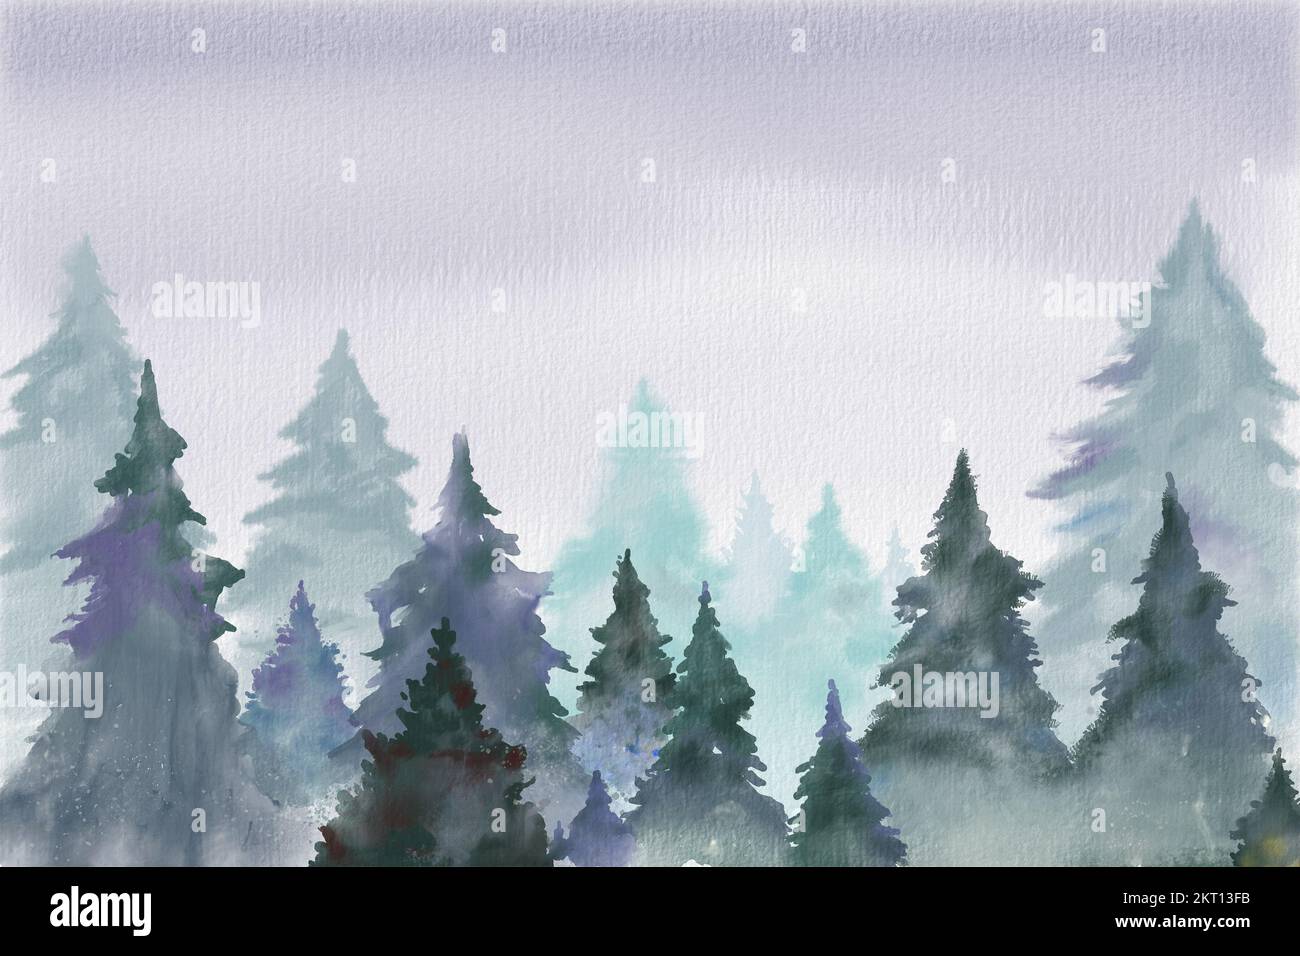 Fondo de Navidad con algunos árboles en un ambiente con niebla y nieve. Acuarela digital. Foto de stock